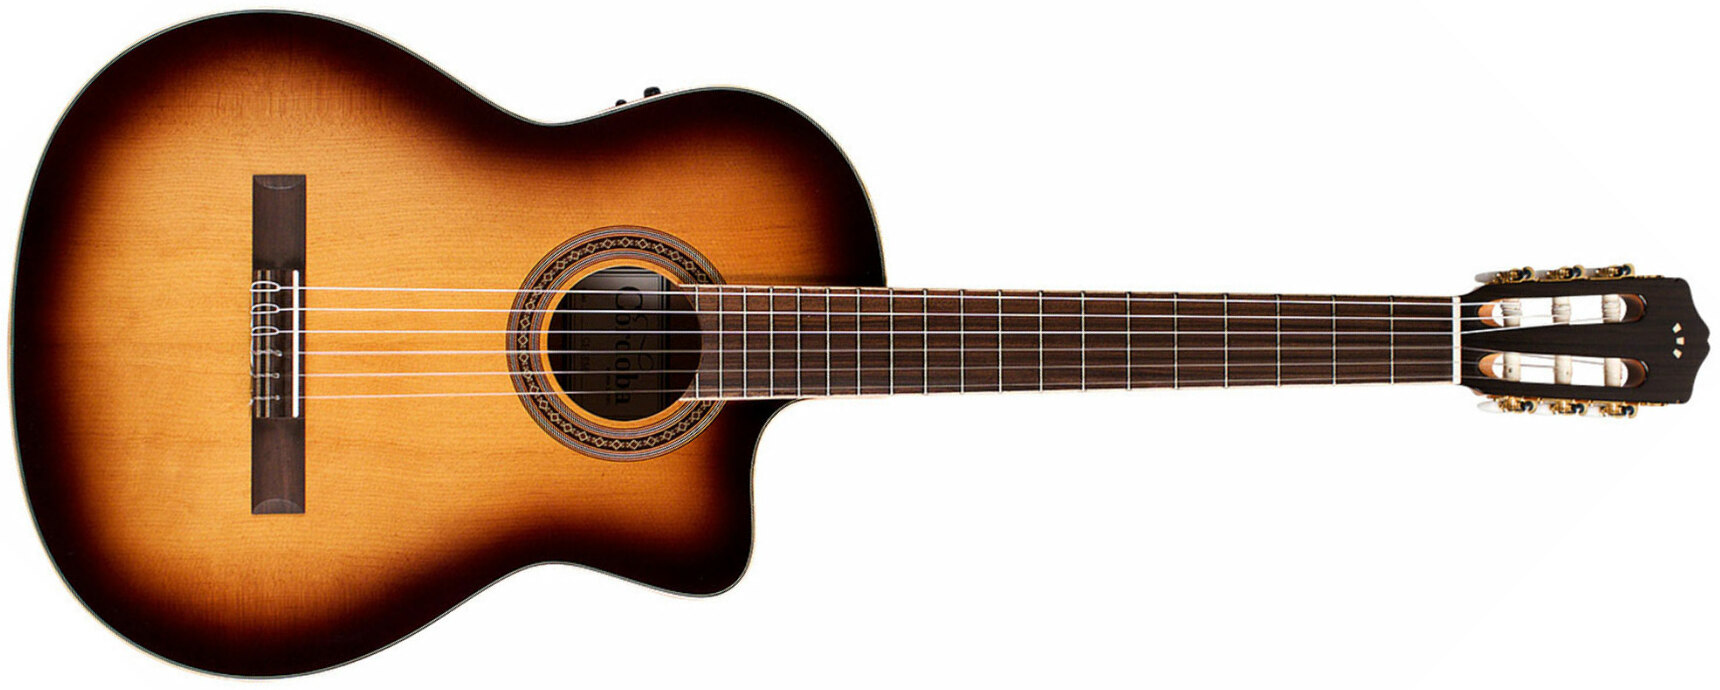 Cordoba C5-ce Sb Iberia 4/4 Cw Epicea Acajou Rw - Sunburst - Klassieke gitaar 4/4 - Main picture